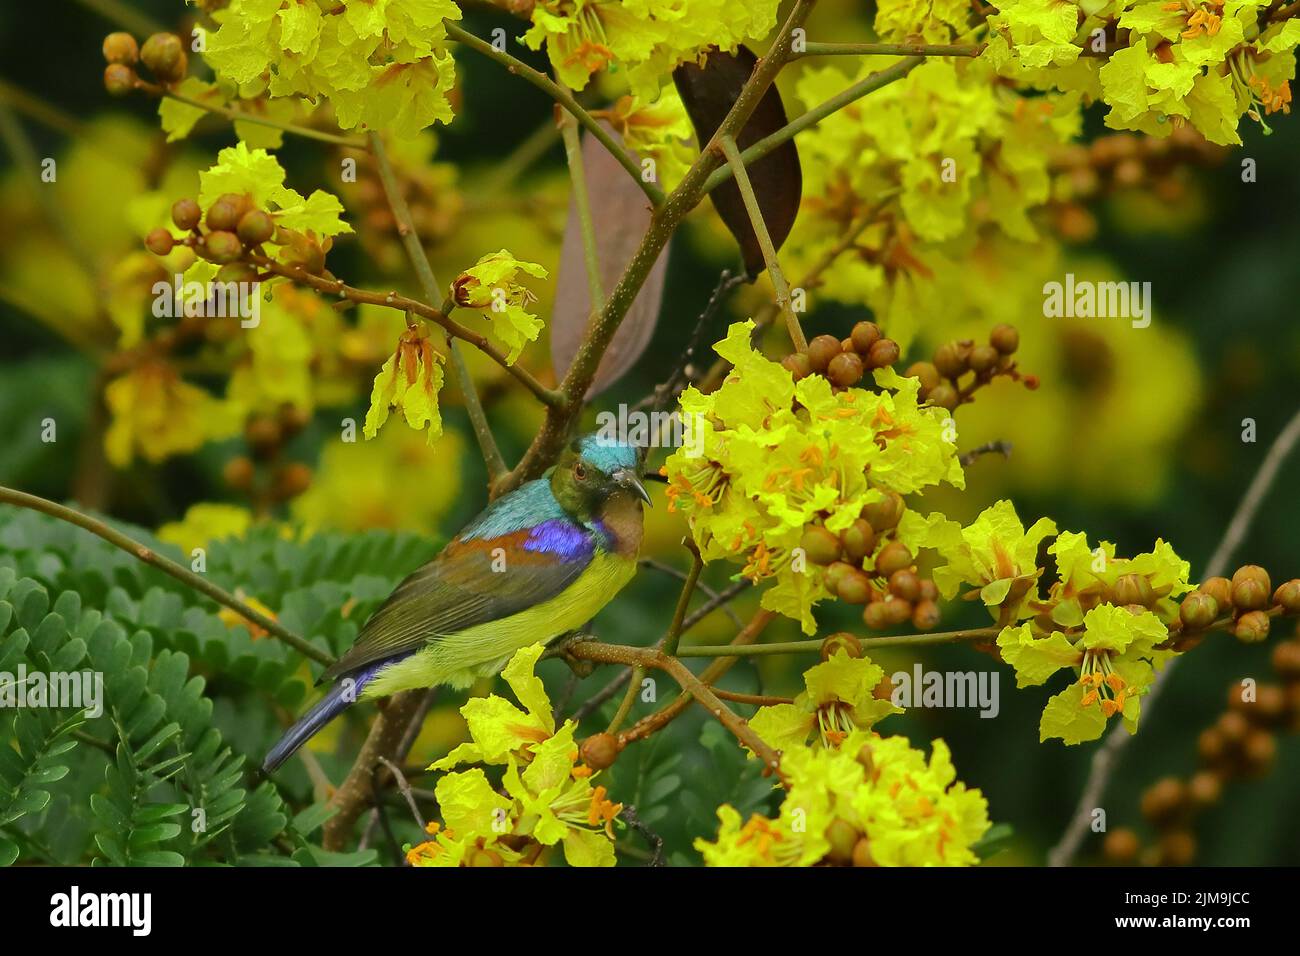 Ein Sonnenvögel mit Olivenrücken staut sich unter den gelben Blüten der Gelben Flametere in Malaysia. Stockfoto